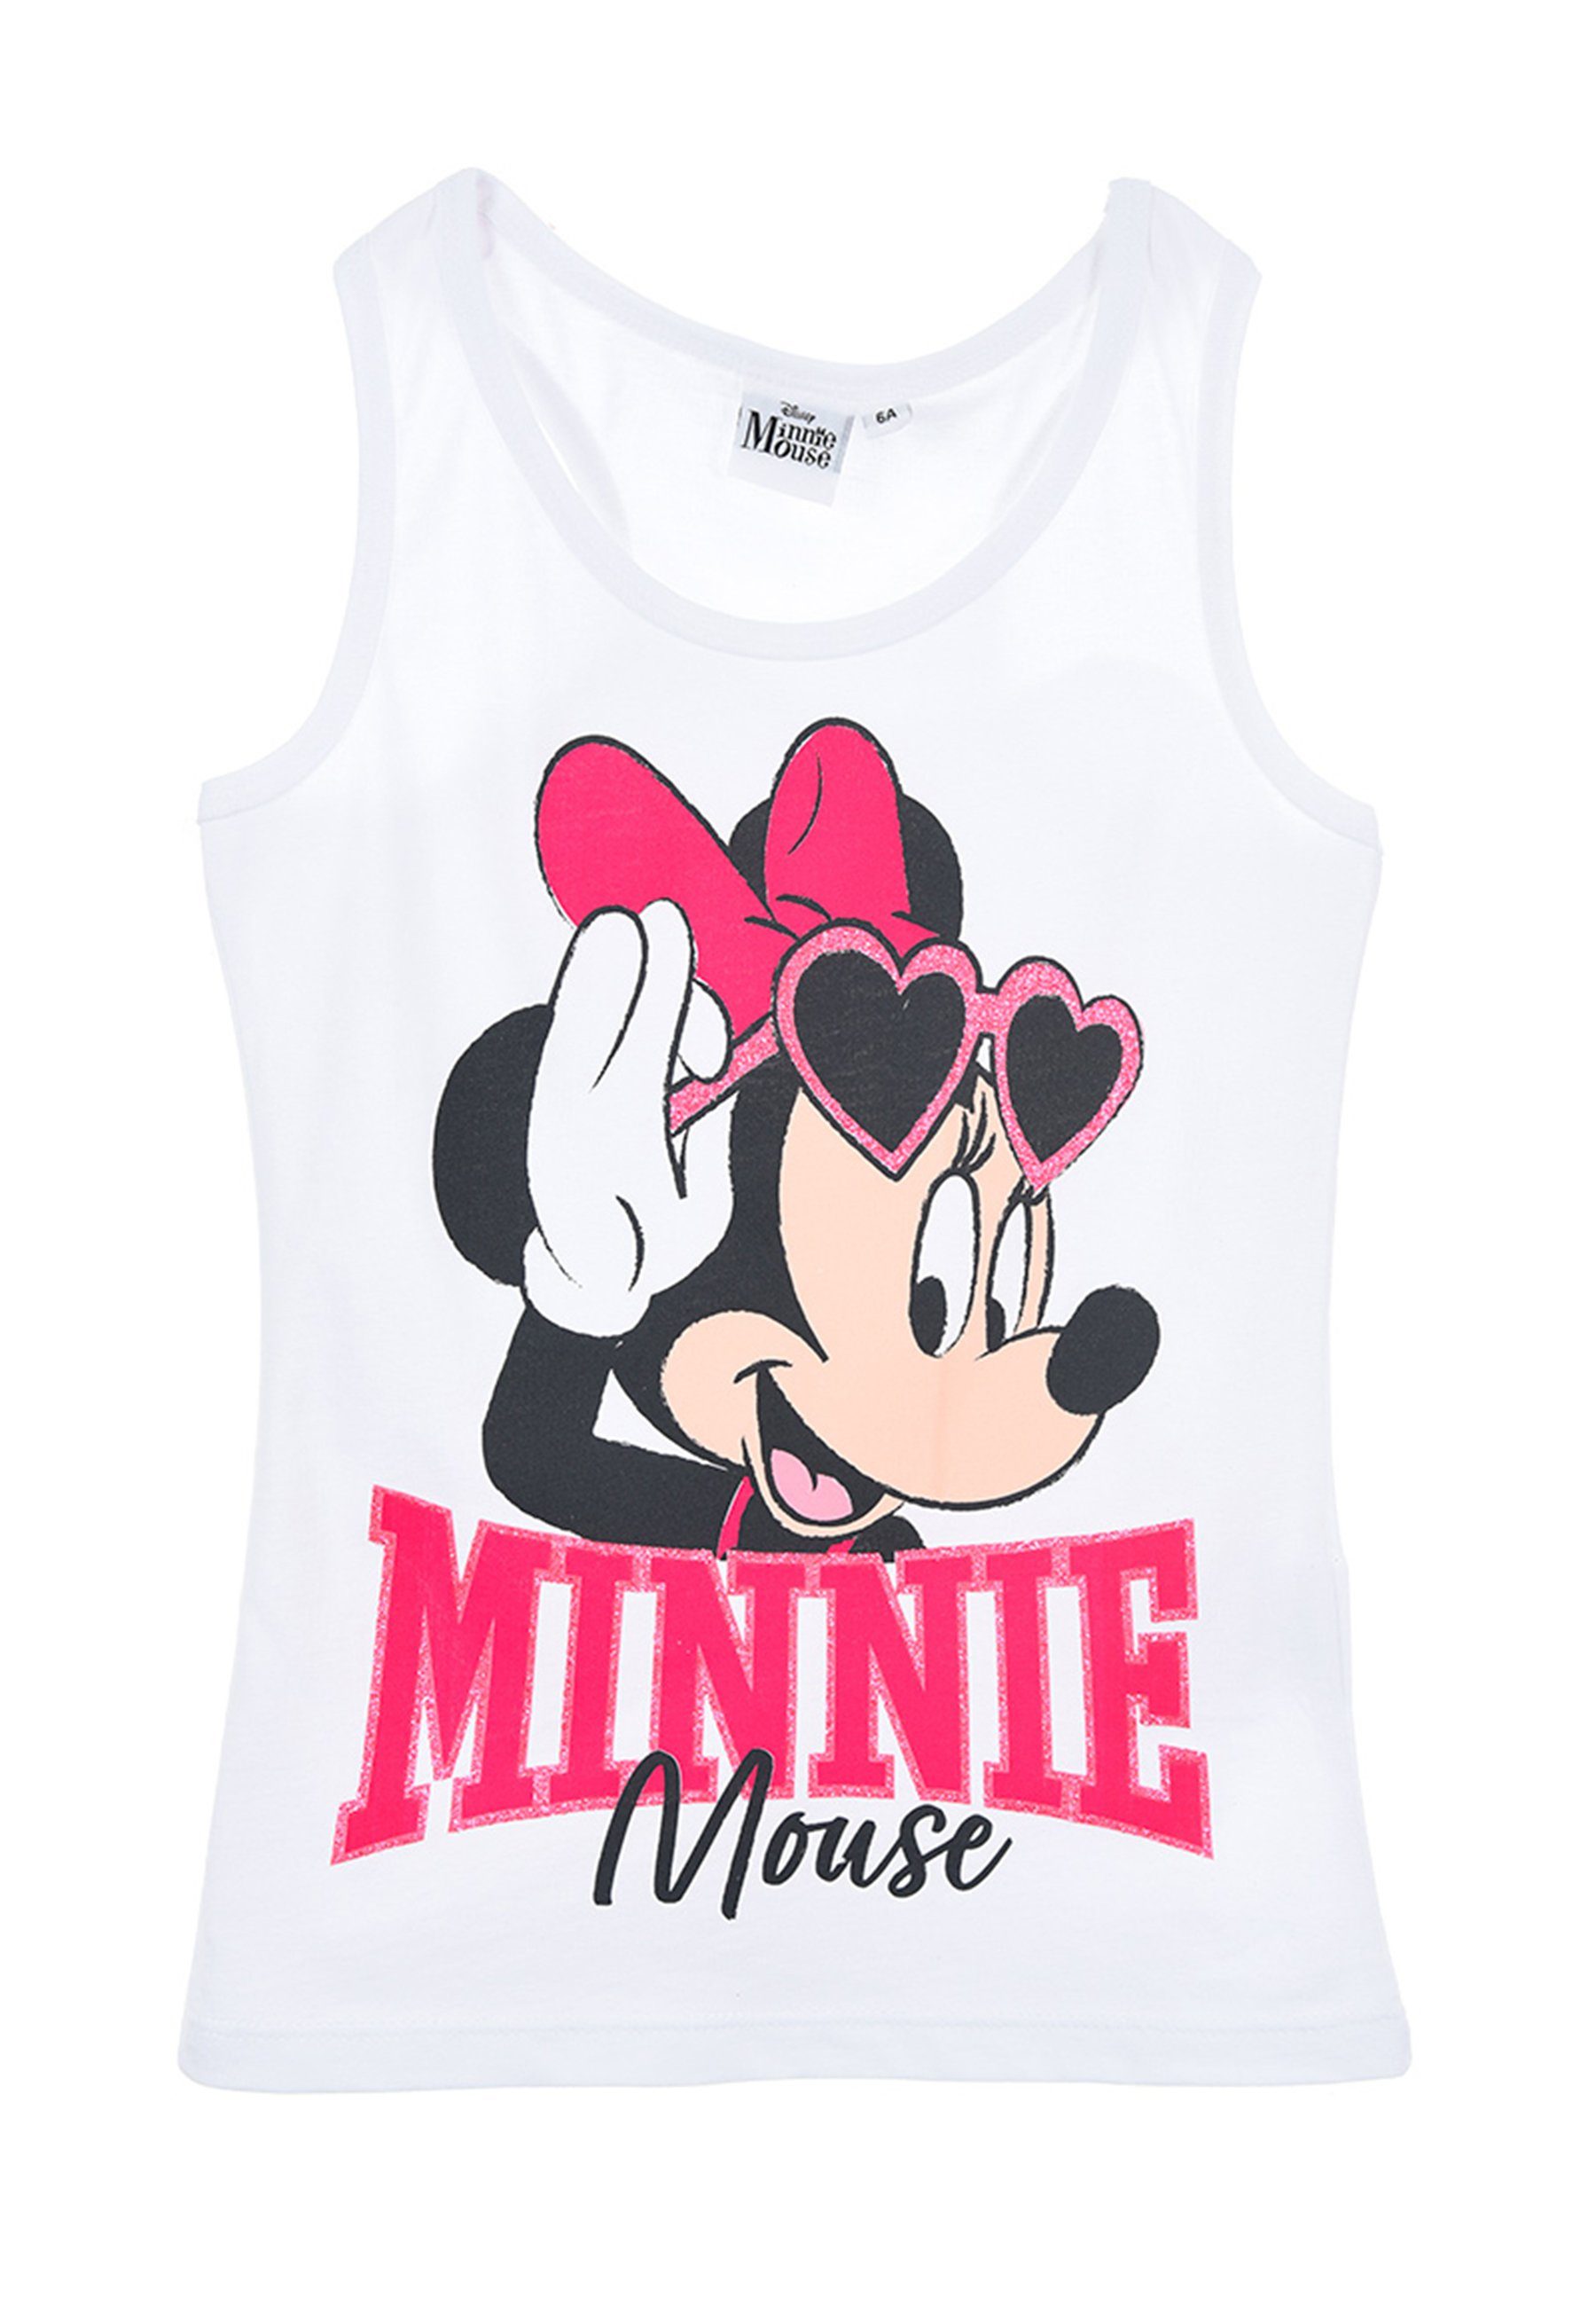 Disney Minnie Mouse Muskelshirt Mädchen Shirt Sommer Top Kinder Träger-Shirt Weiß